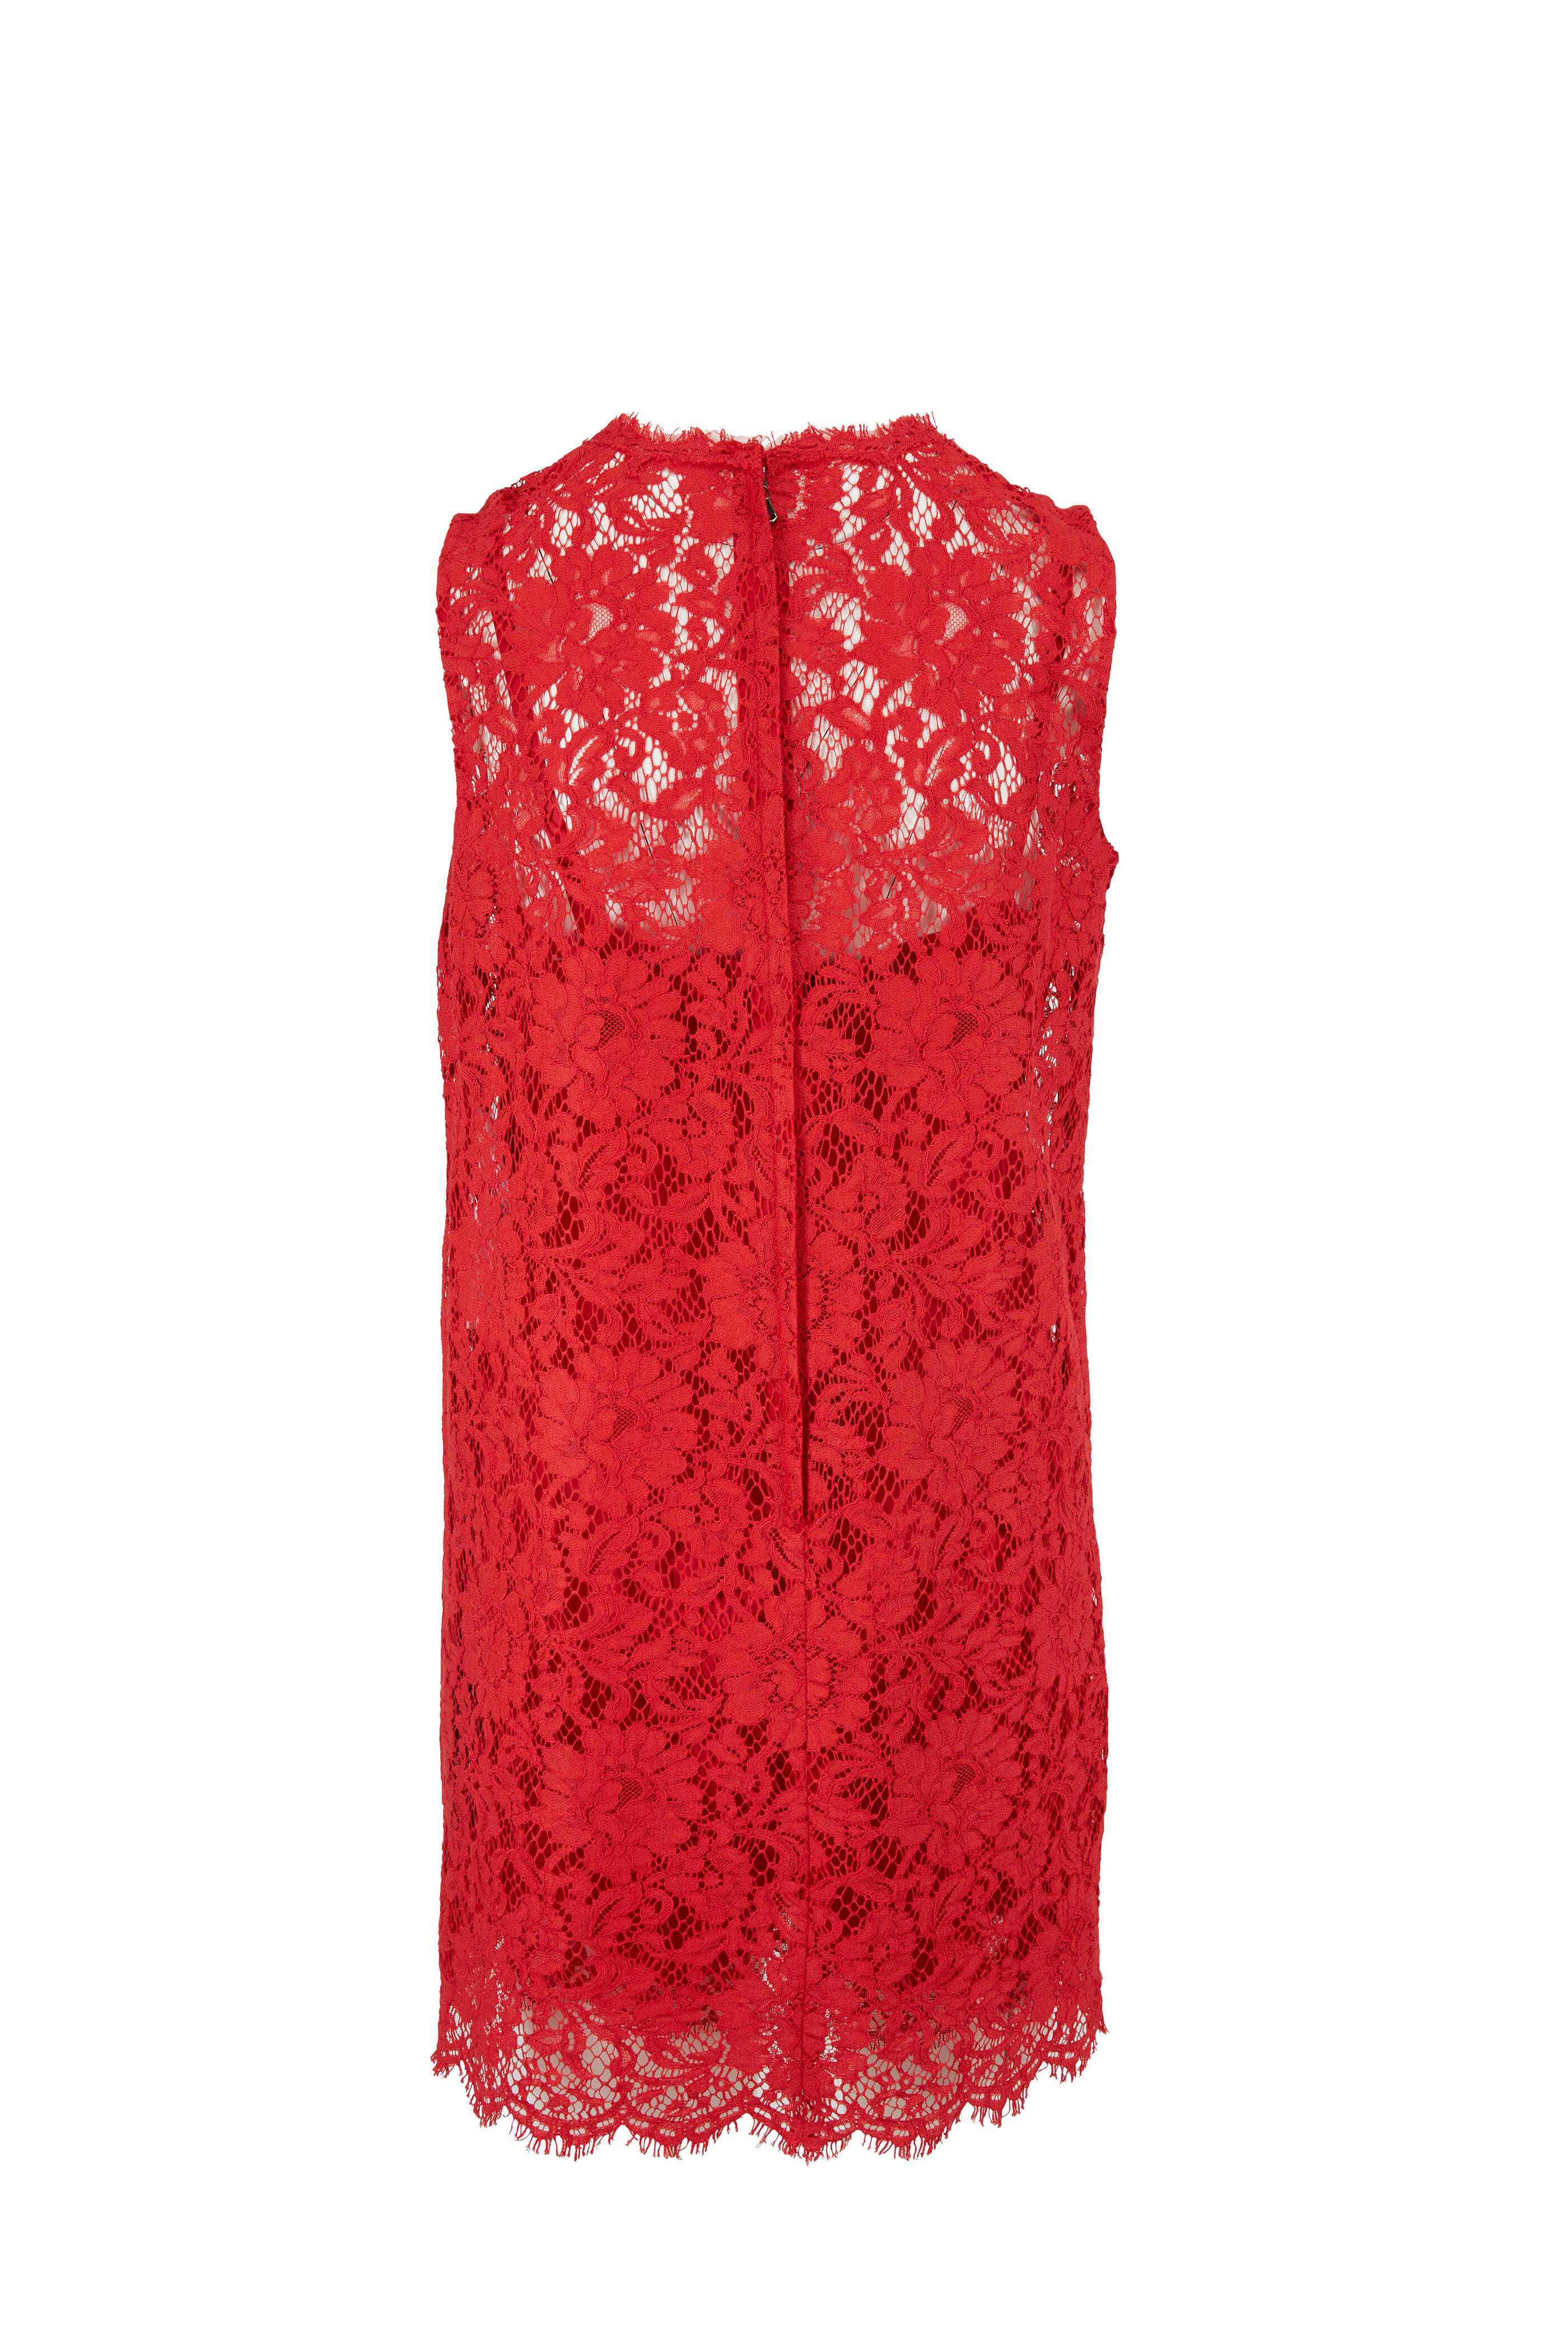 Dolce & Gabbana - Red Lace Sleeveless Mini Dress